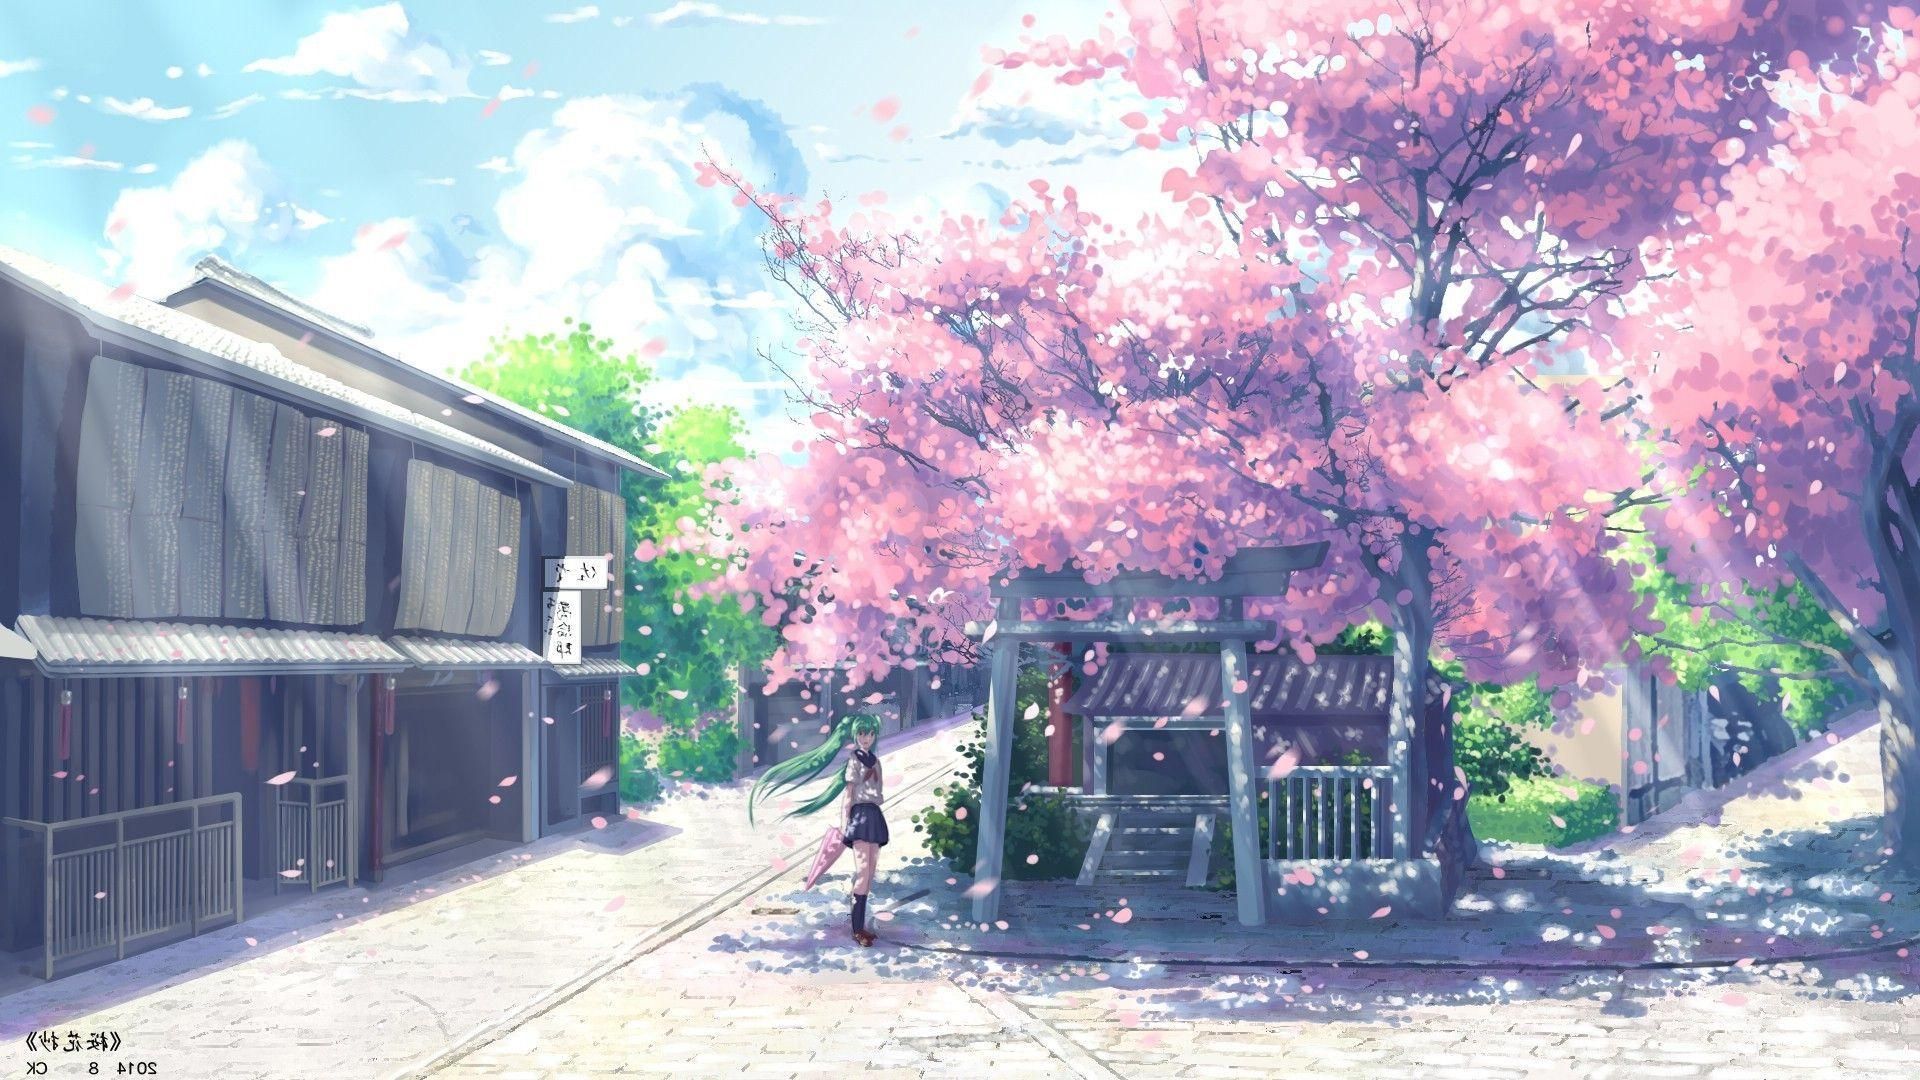 Anime Wallpaper 1920x1080 Aesthetic. Anime background wallpaper, Anime cherry blossom, Anime scenery